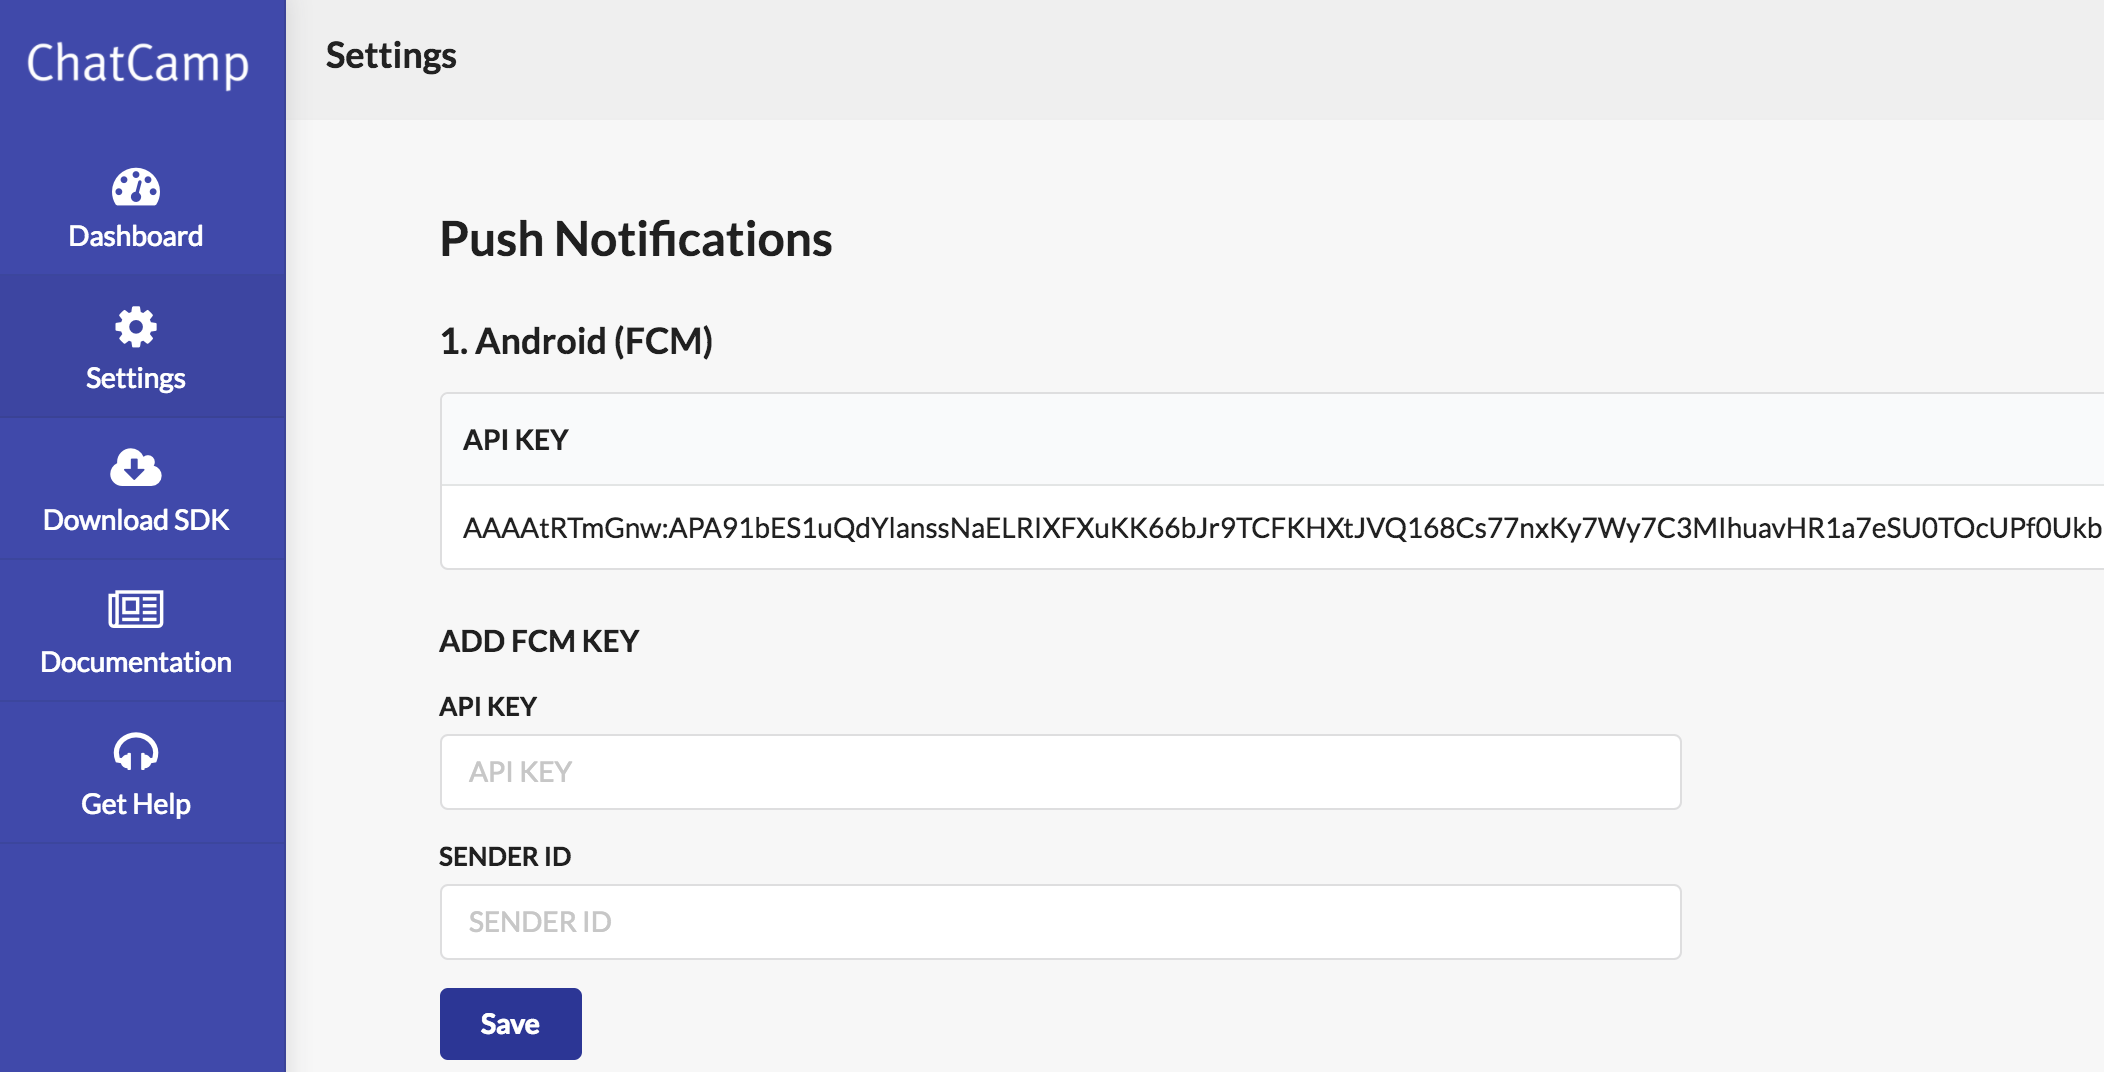 Add FCM Server Key and Sender ID in ChatCamp Dashboard